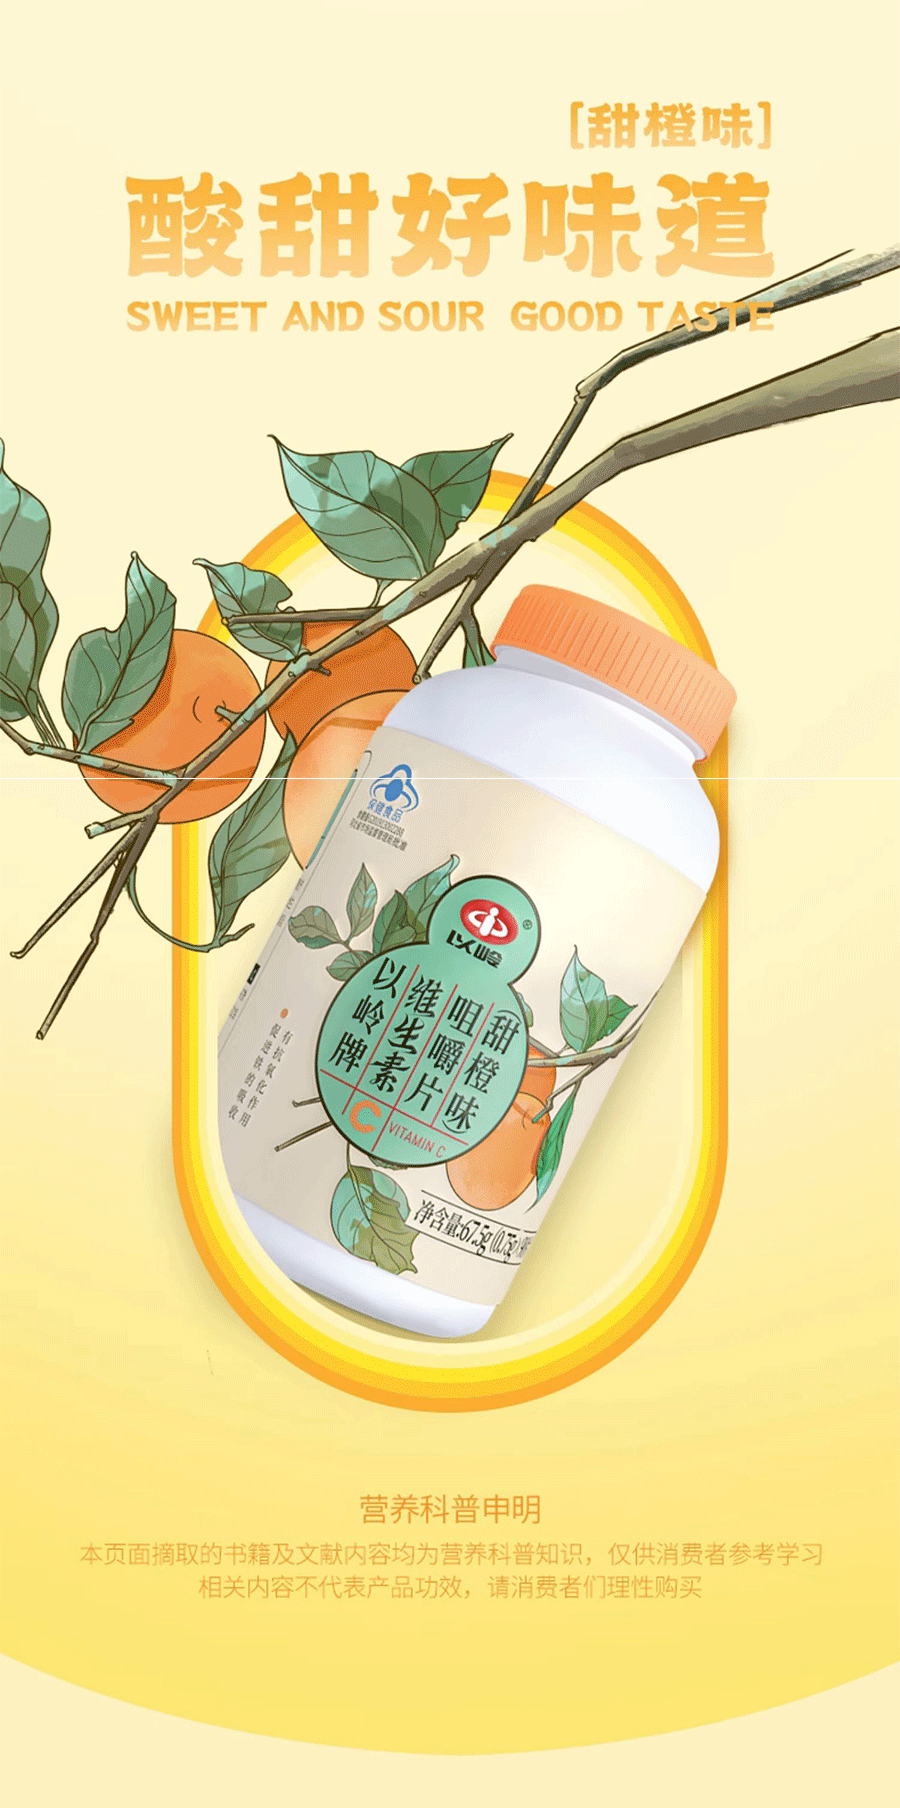 【赠品】中国以岭 维生素C咀嚼片 补充维生素C 提高免疫力 预防感冒 缓解牙龈出血 甜橙味 90粒/瓶